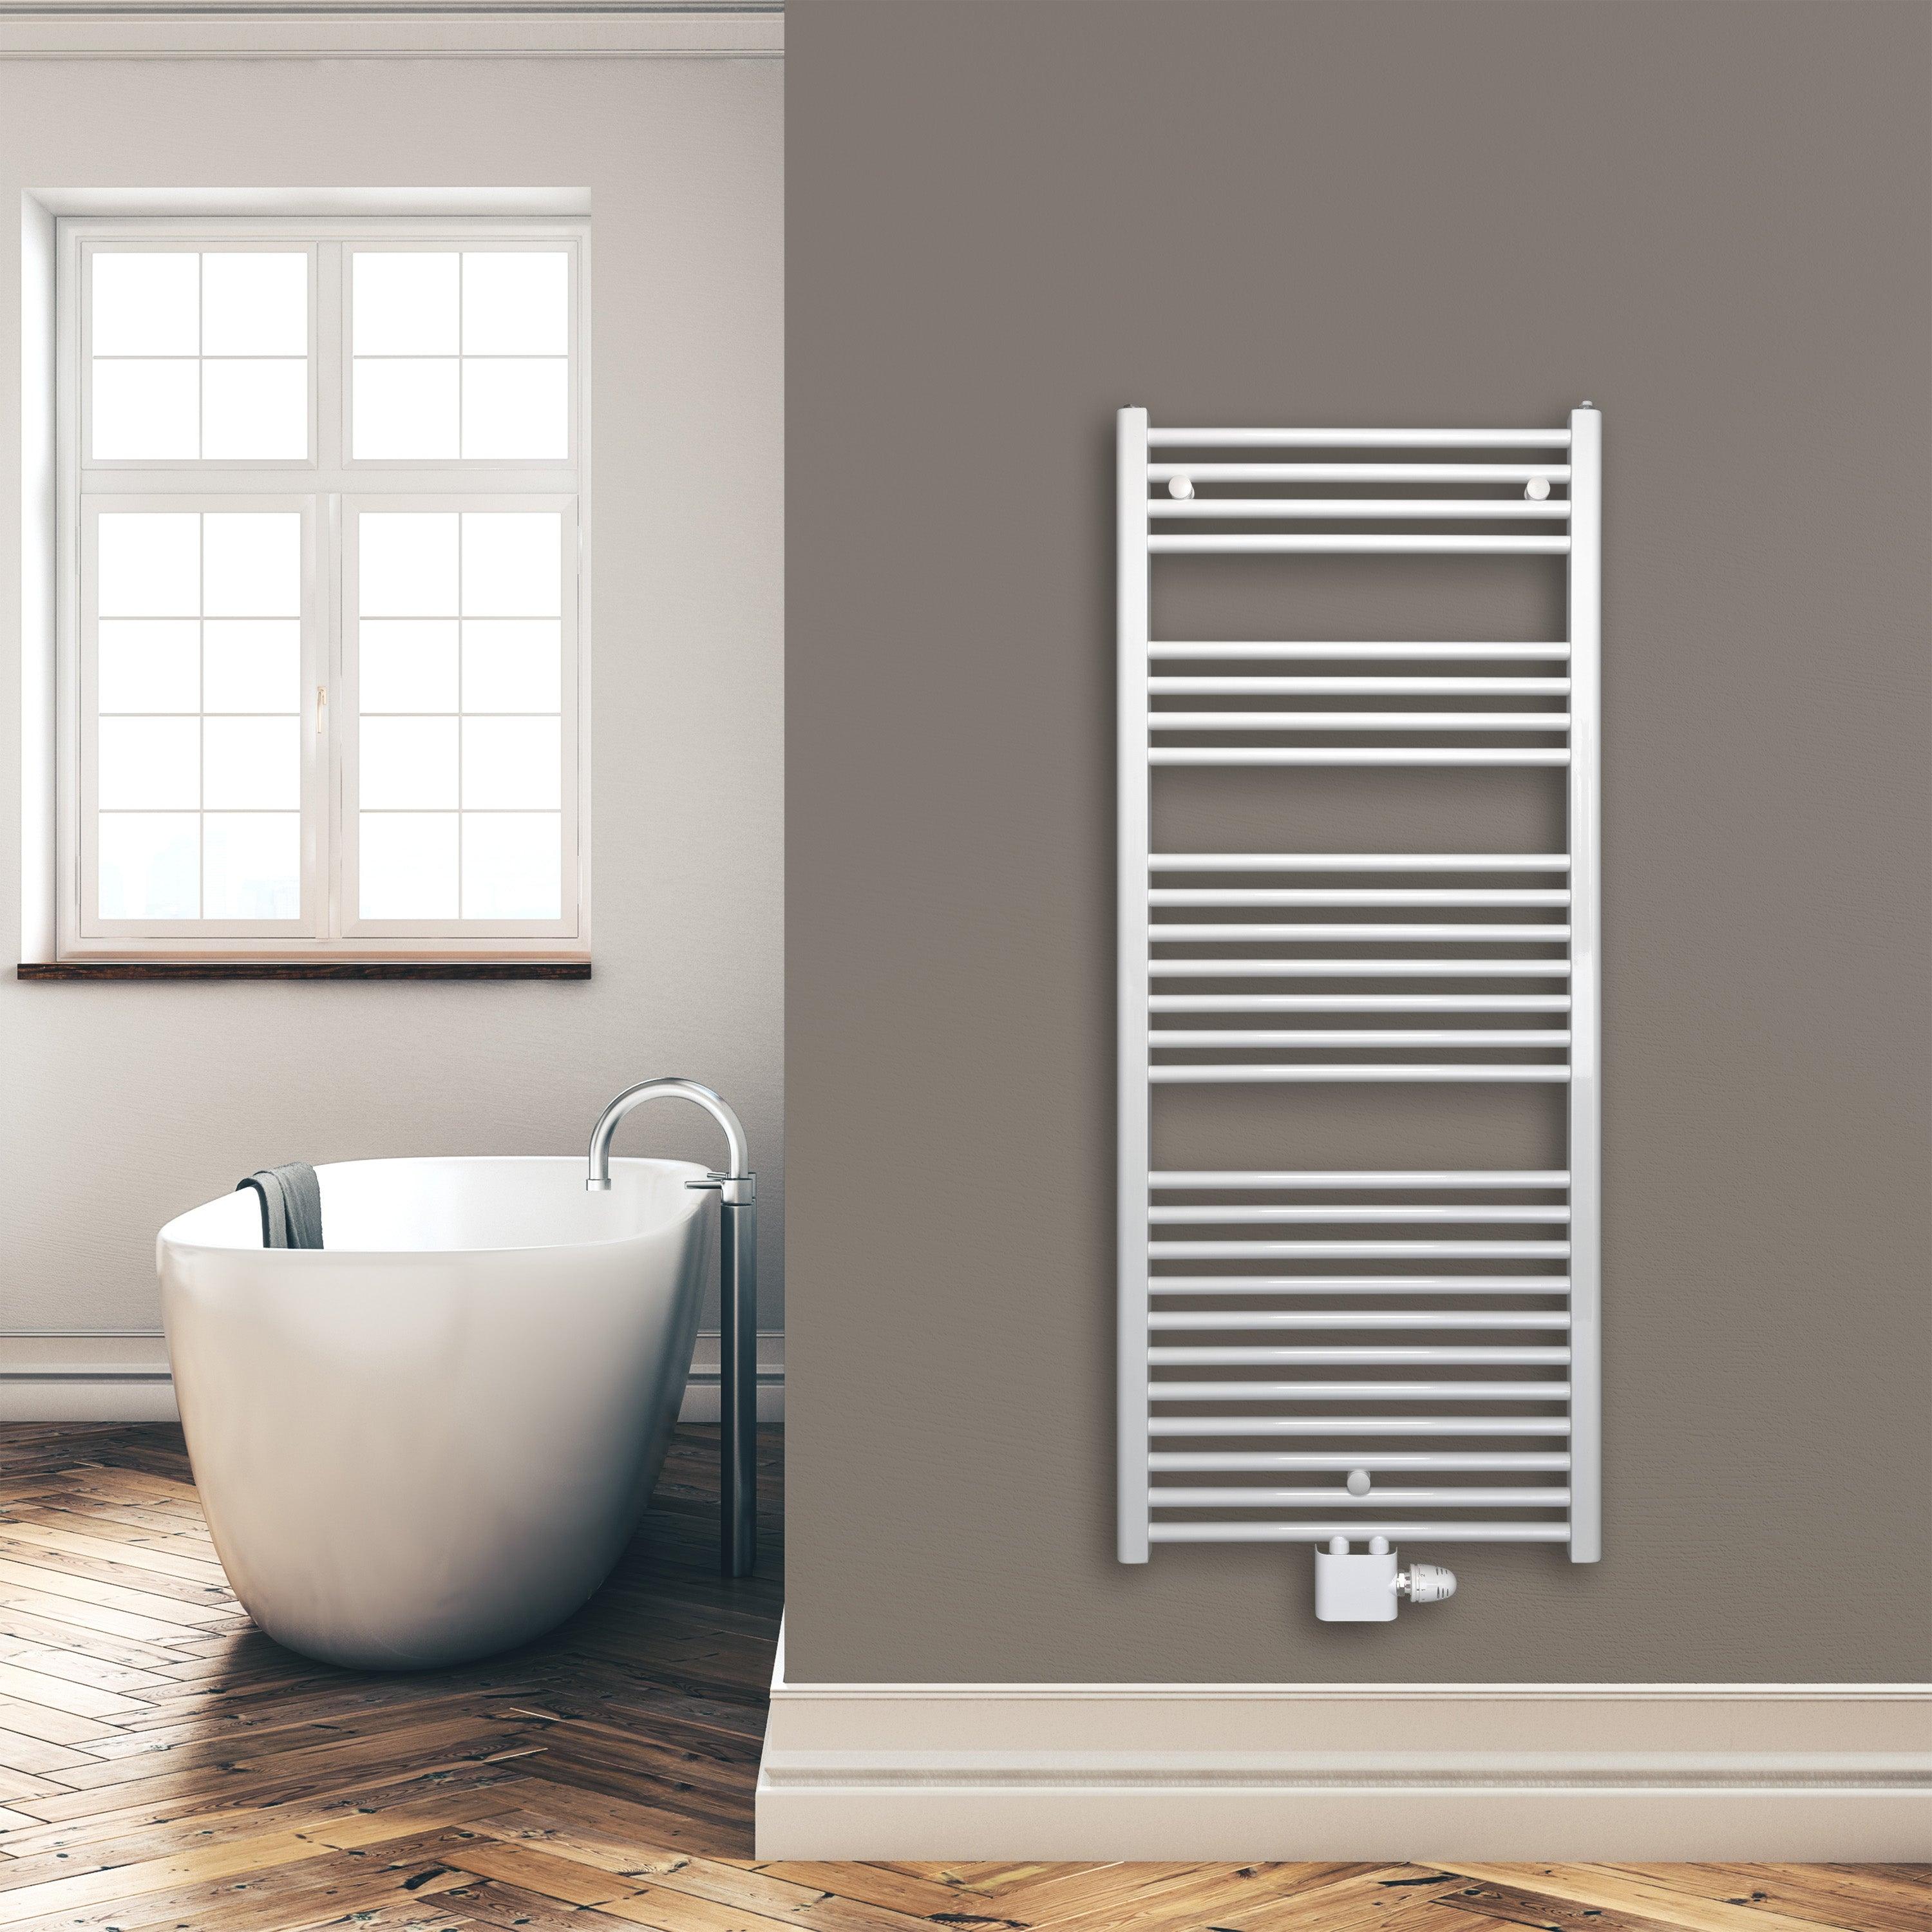 Badheizkörper 1424 x 600 mm gerade mit Mittenanschluss Handtuchhalter Badezimmer Heizung Handtuchwärmer weiß Montagebeispiel - heizkoerper.shop